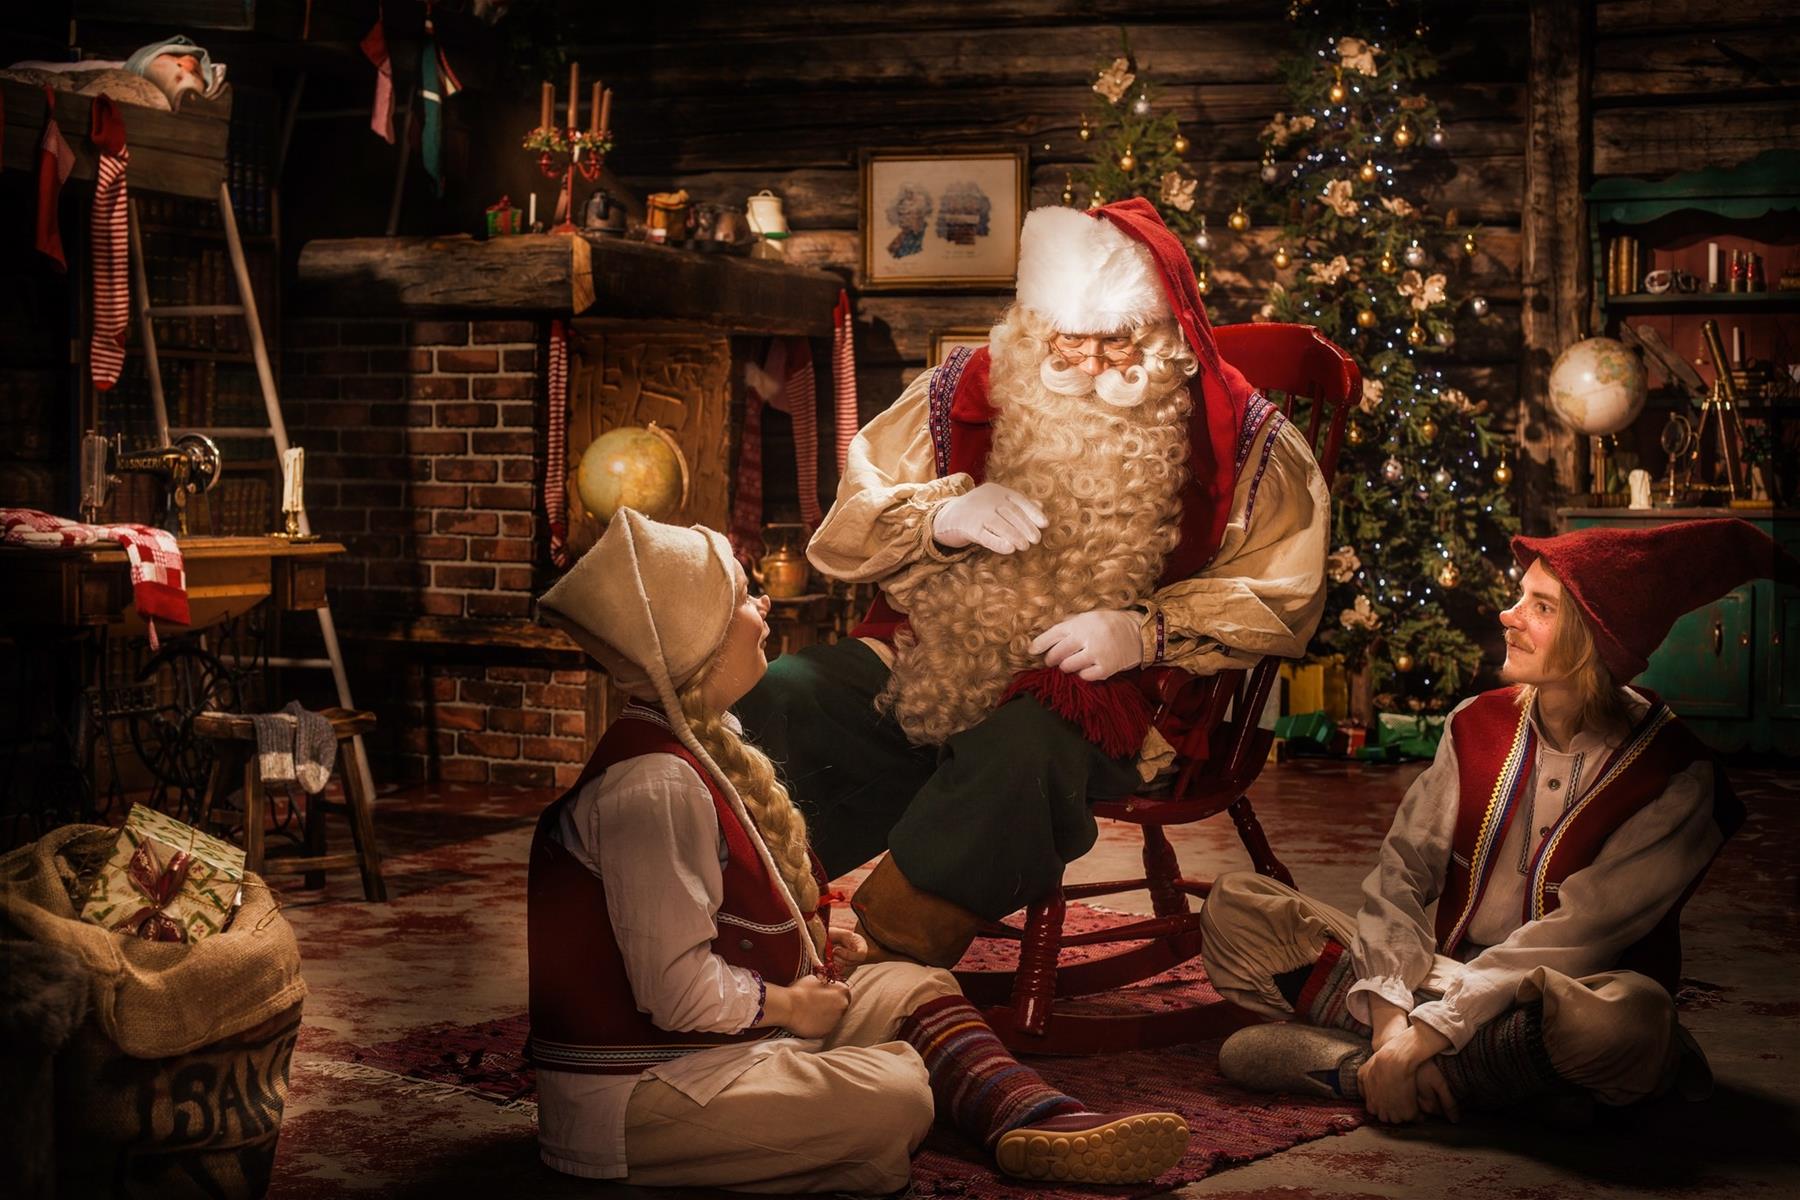 Santa Claus is looking for helpers!